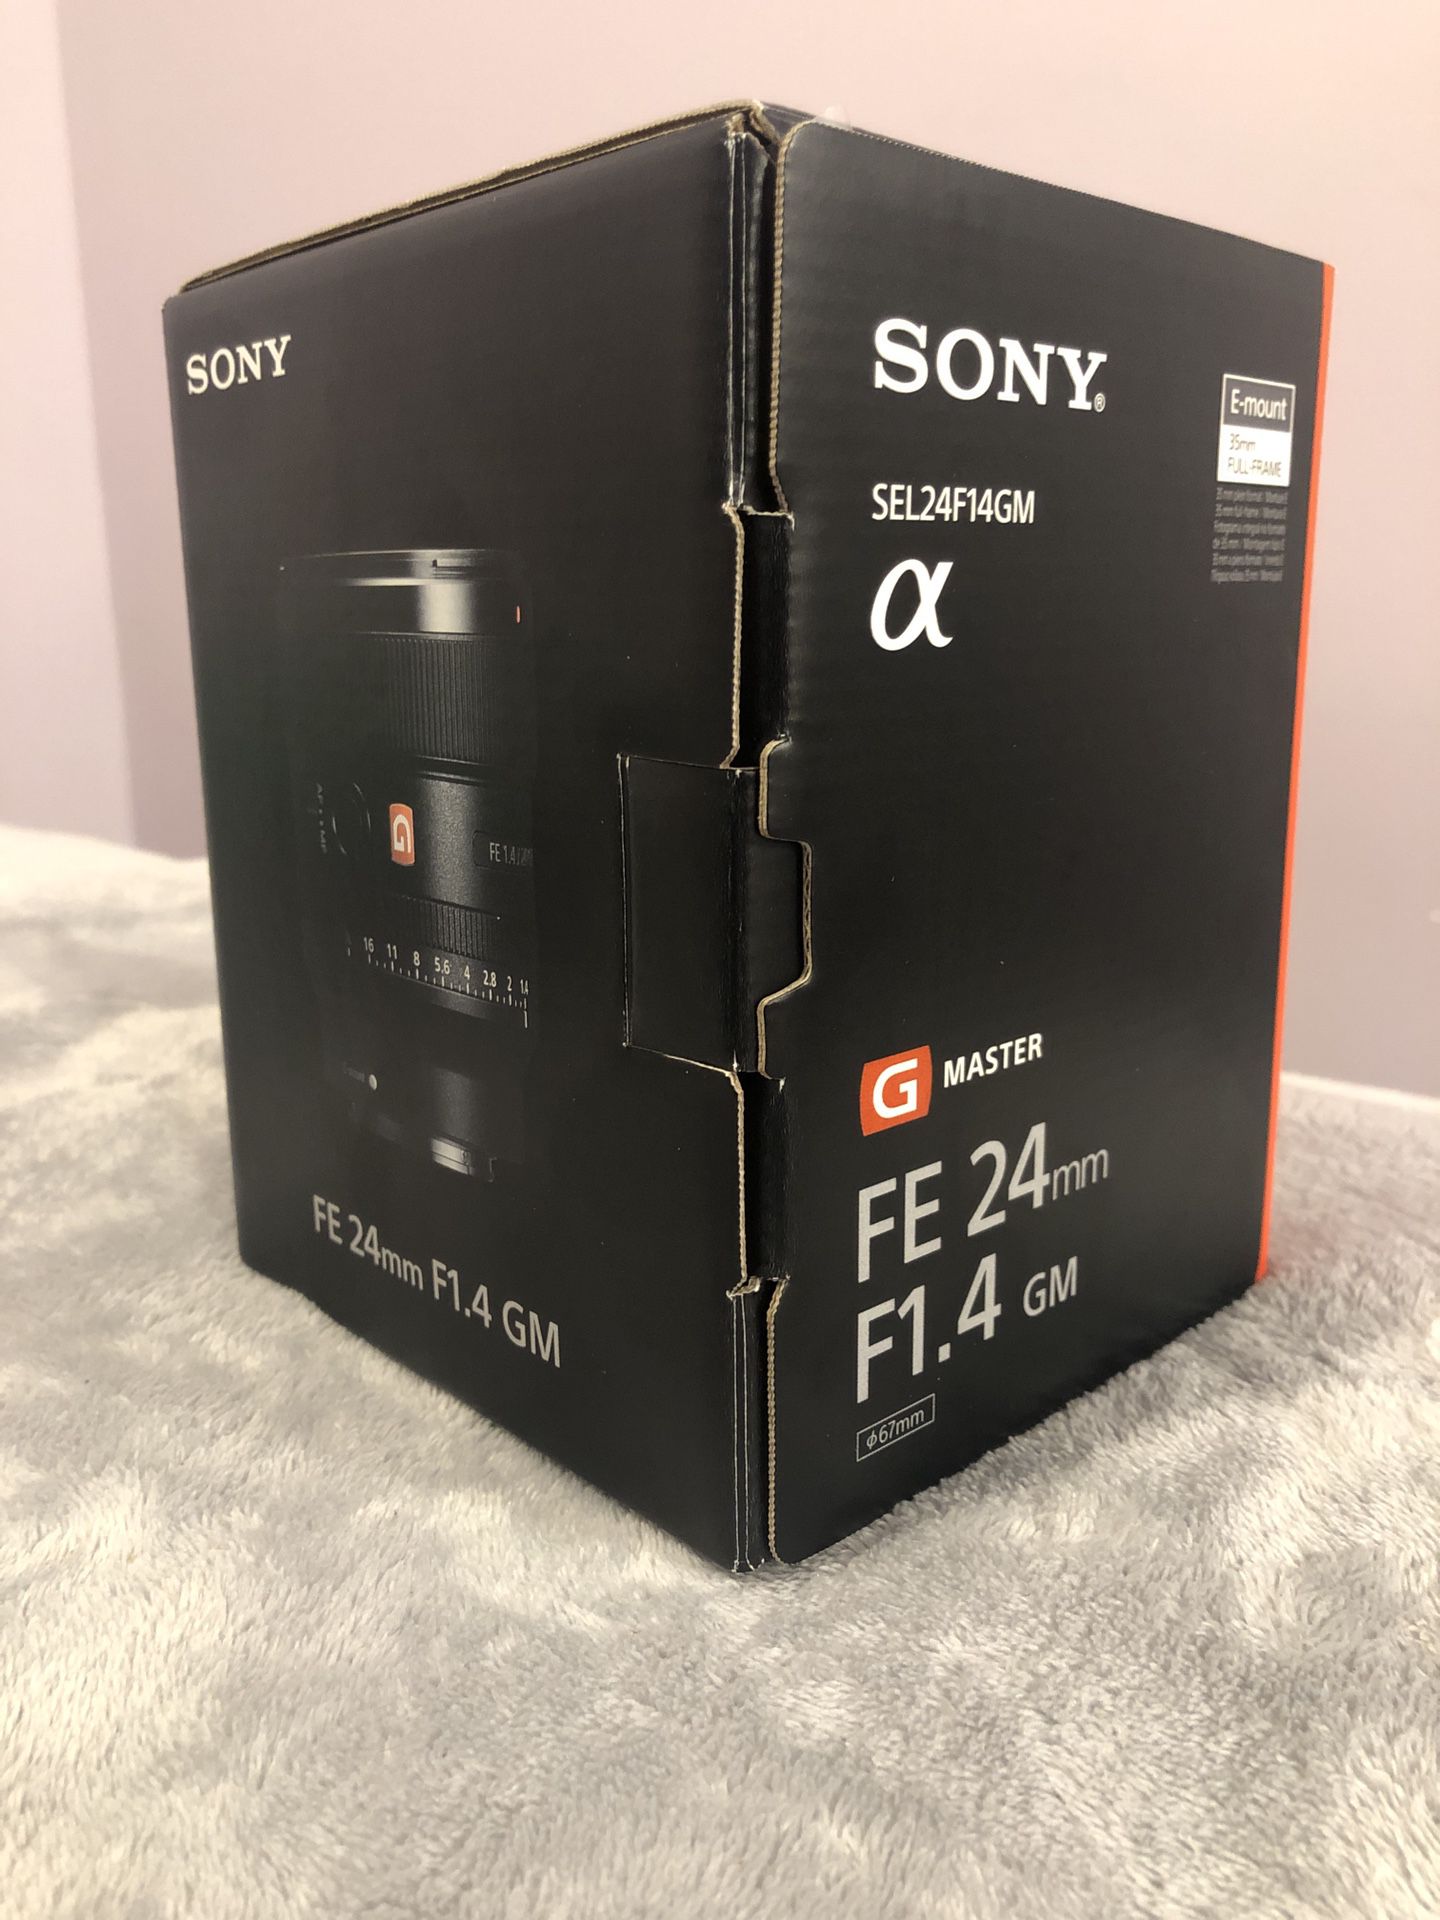 Sony 24mm f/1.4 GMaster E Mount Lens - Brand New